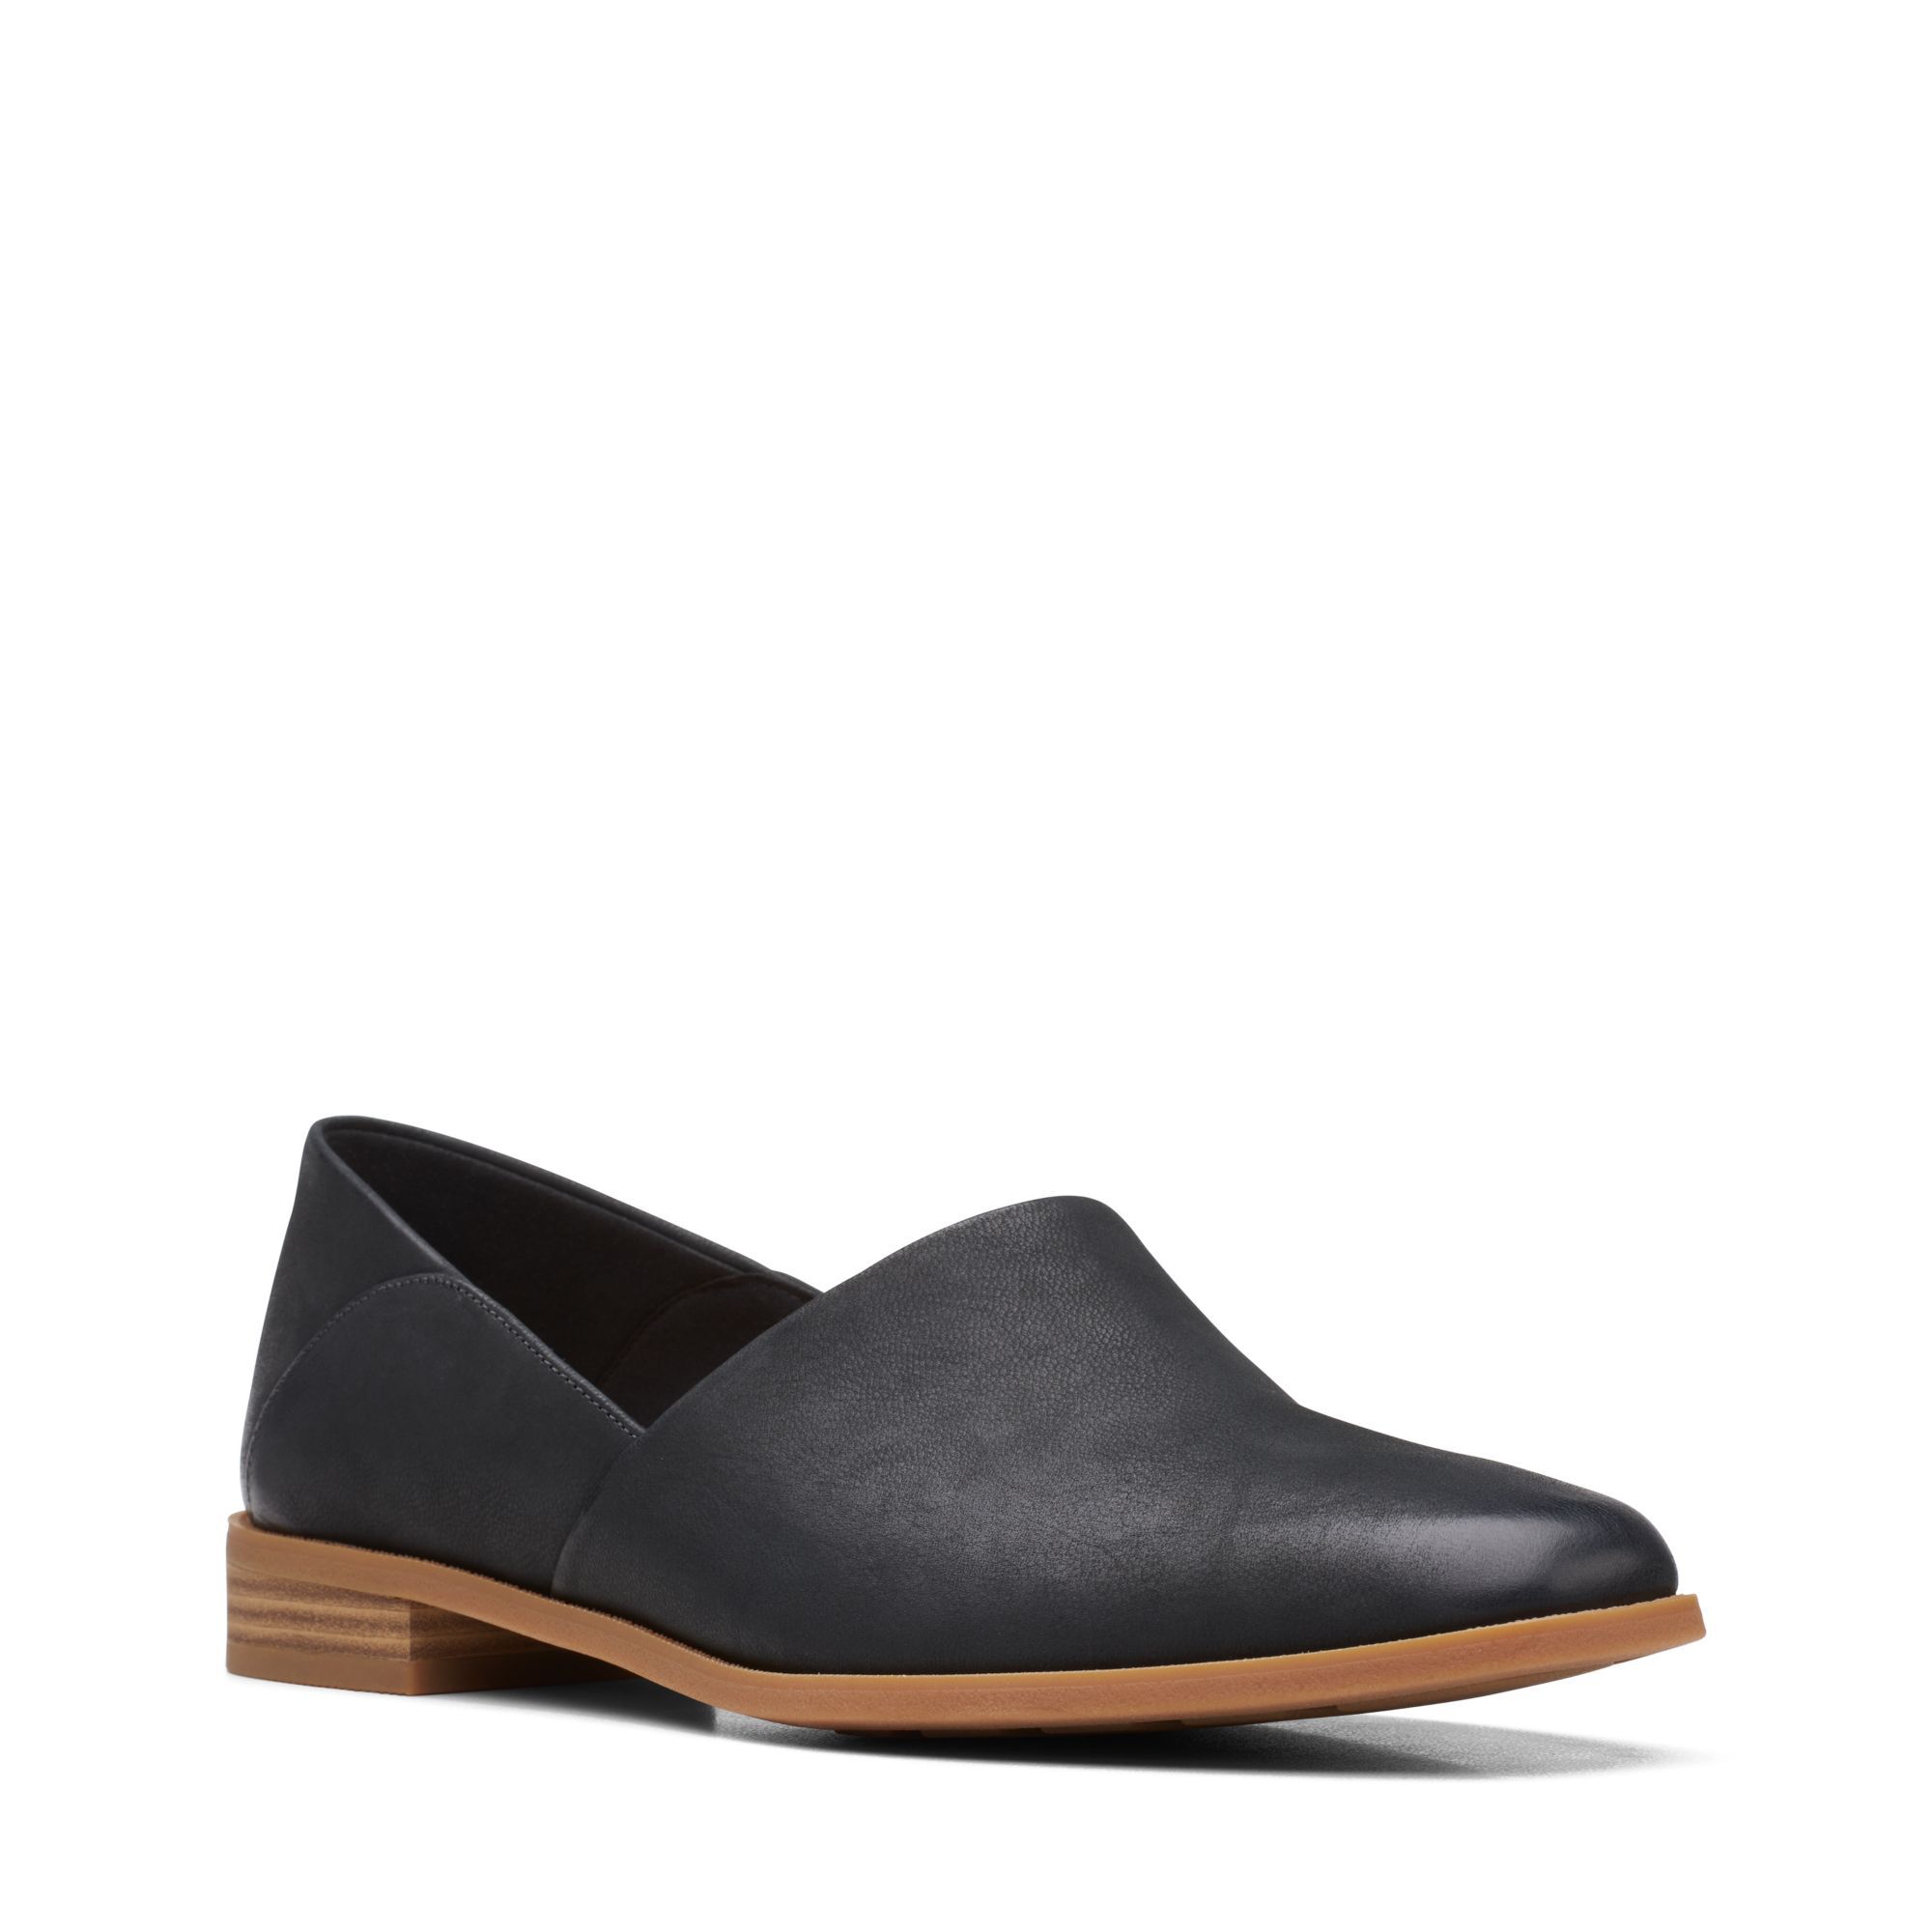 Женские туфли-лодочки Clarks, черные, цвет черный, размер 37.5 - фото 7